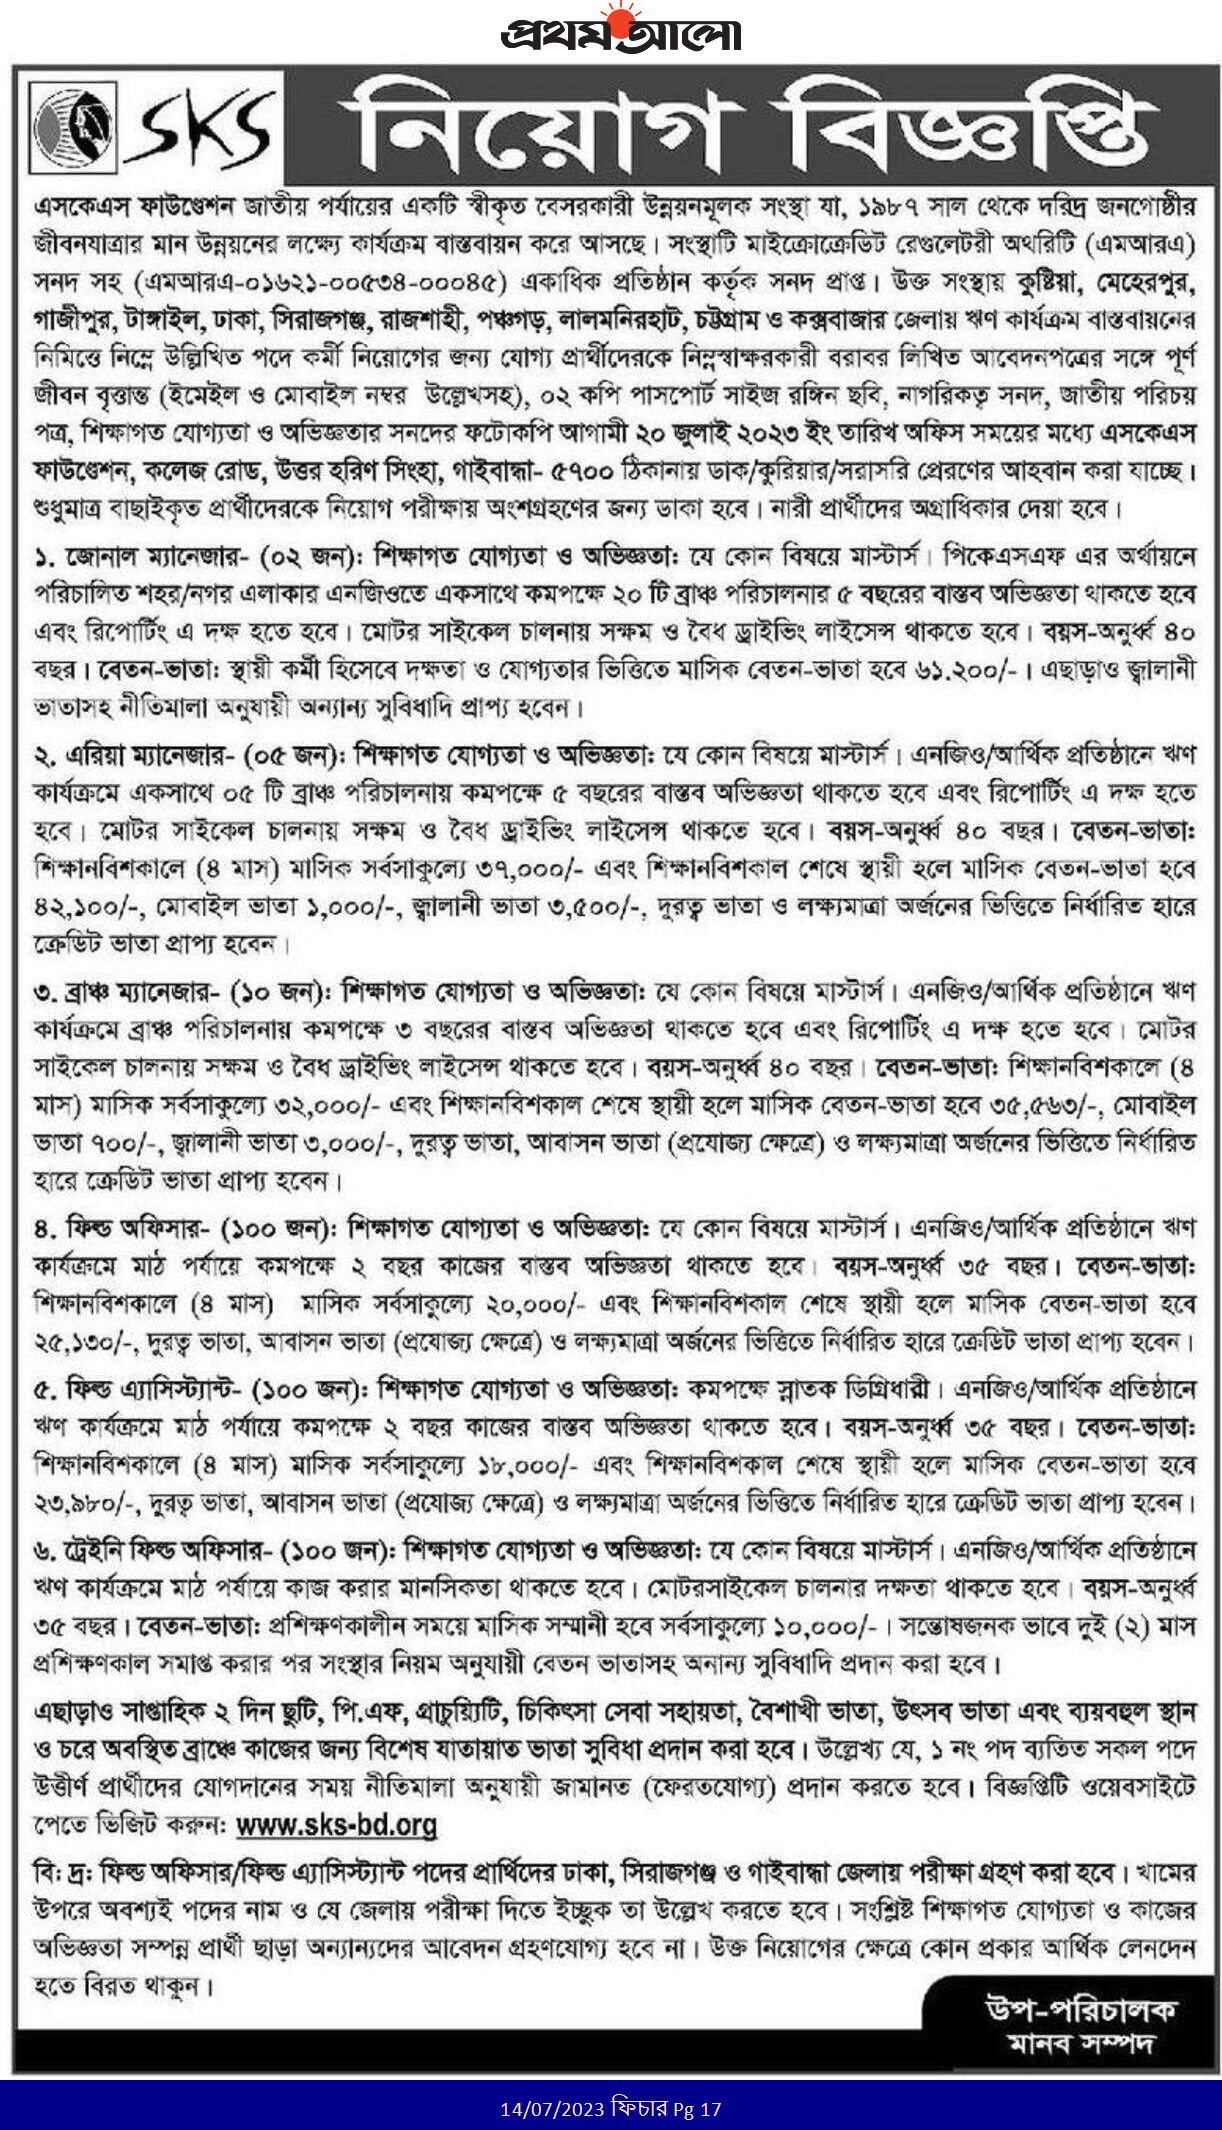 চলমান সকল এনজিও নিয়োগ বিজ্ঞপ্তি জুলাই ২০২৩ - এসএসএস-এইচএসসি-স্নাতক পাশে এনজিও চাকরি ২০২৩ - All Ongoing Latest NGO job circular 2023 - All NGO Job Circular 2023 Bangladesh - বেসরকারি চাকরির খবর জুলাই ২০২৩ - প্রাইভেট জব সার্কুলার জুলাই 2023 - Private Jobs Circular 2023